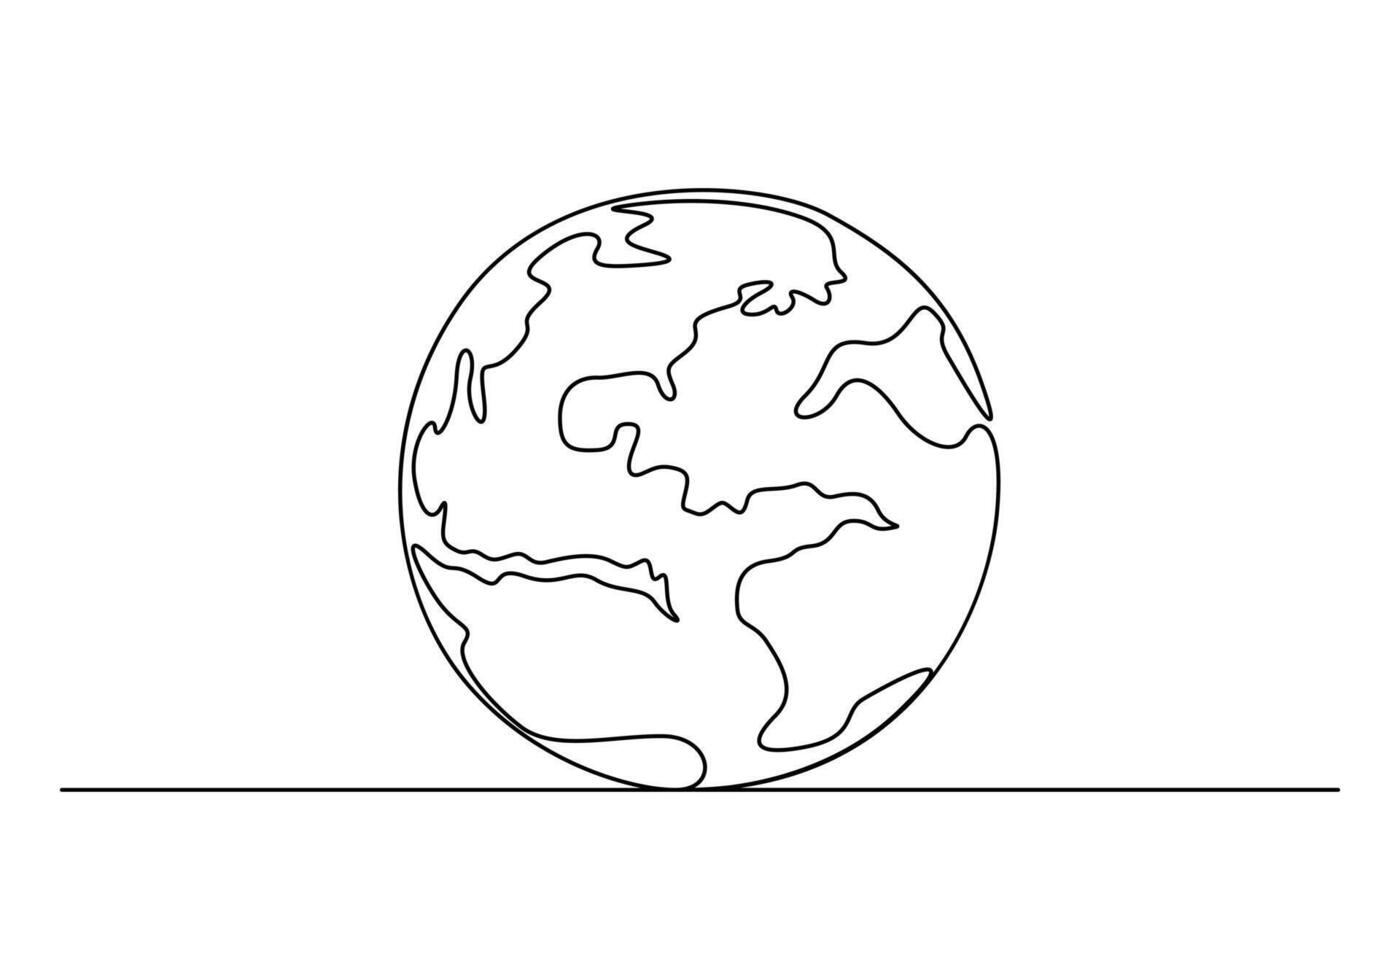 Terre globe continu un ligne dessin vecteur illustration. pro vecteur